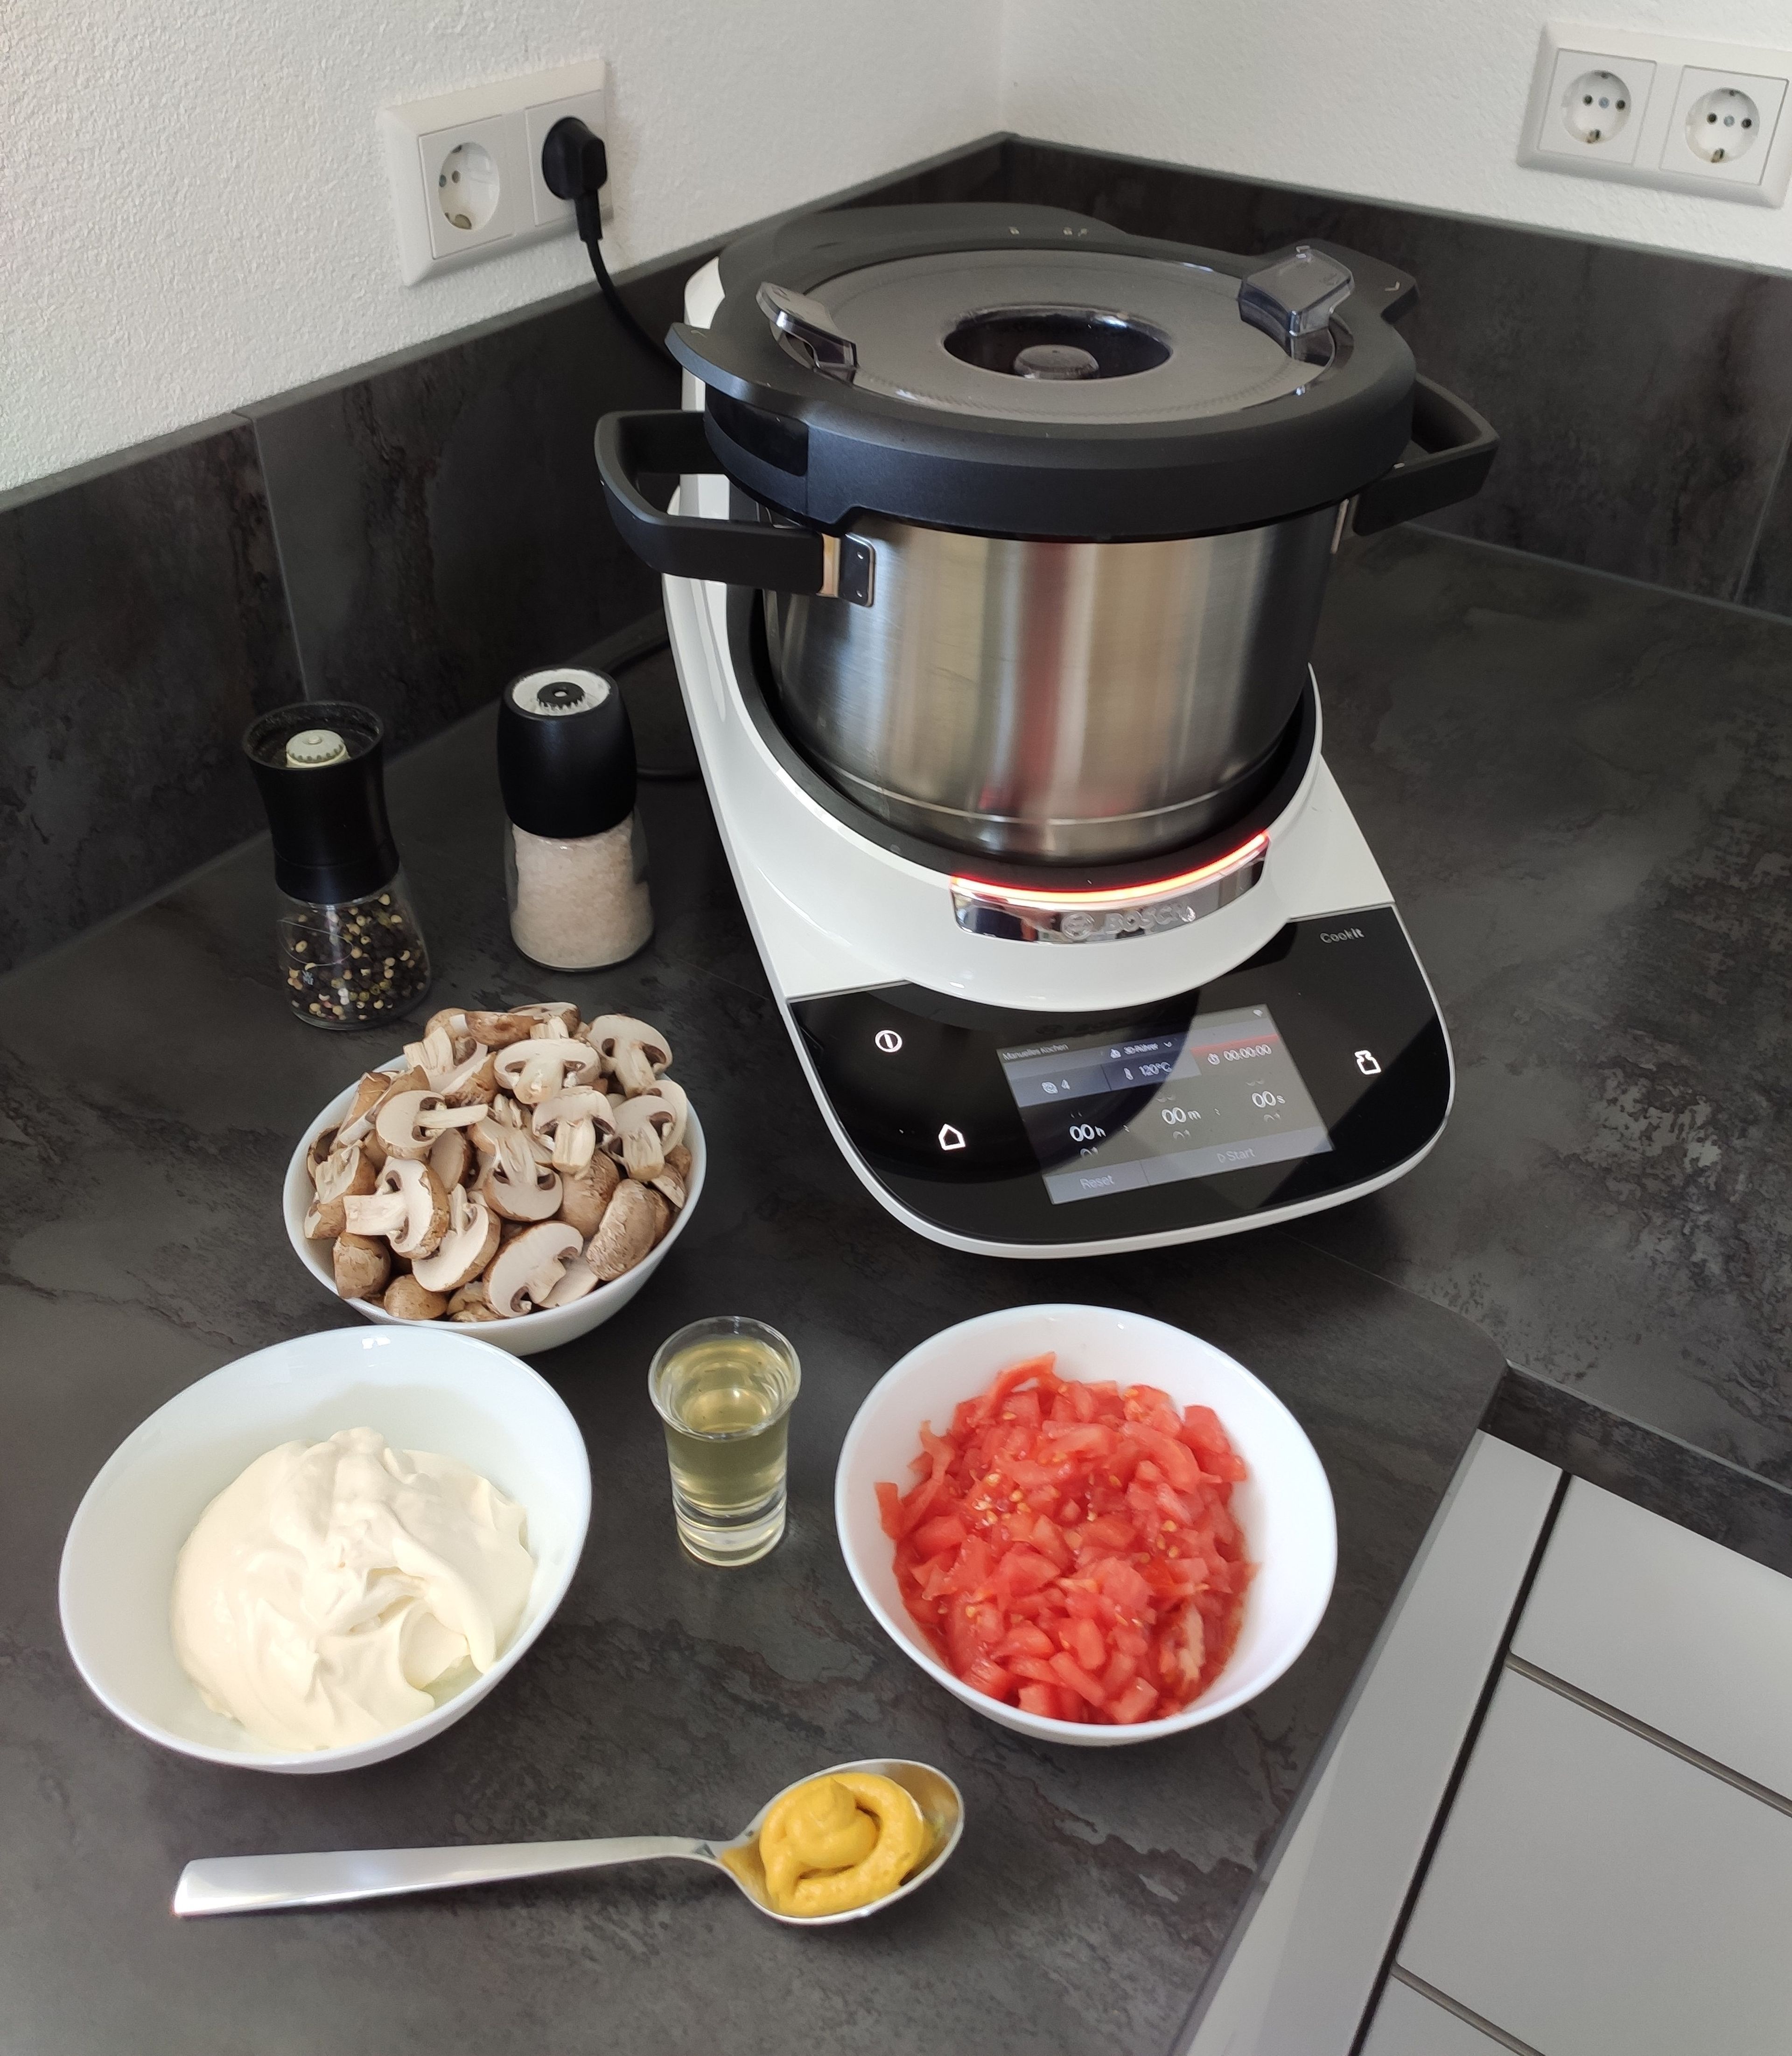 Nun die Tomaten häuten. Dafür die Tomaten an der Unterseite kreuzweise einritzen, in einer Schüssel mit kochenden Wasser übergießen und anschließend mit kalten Wasser abschrecken. Jetzt kann die Haut der Tomate abgezogen werden. Danach die gehäuteten Tomaten klein hacken und mit Crème fraîche, Pilzen, Senf, Wasser der Gewürzgurken, Paprikapulver, Salz und Pfeffer in den Cookit geben und 8 Minuten bei 95 Grad mit dem Cookit 3D-Rührer anbraten (3D-Rührer | Stufe 4 | 95 Grad | 8 Min.).